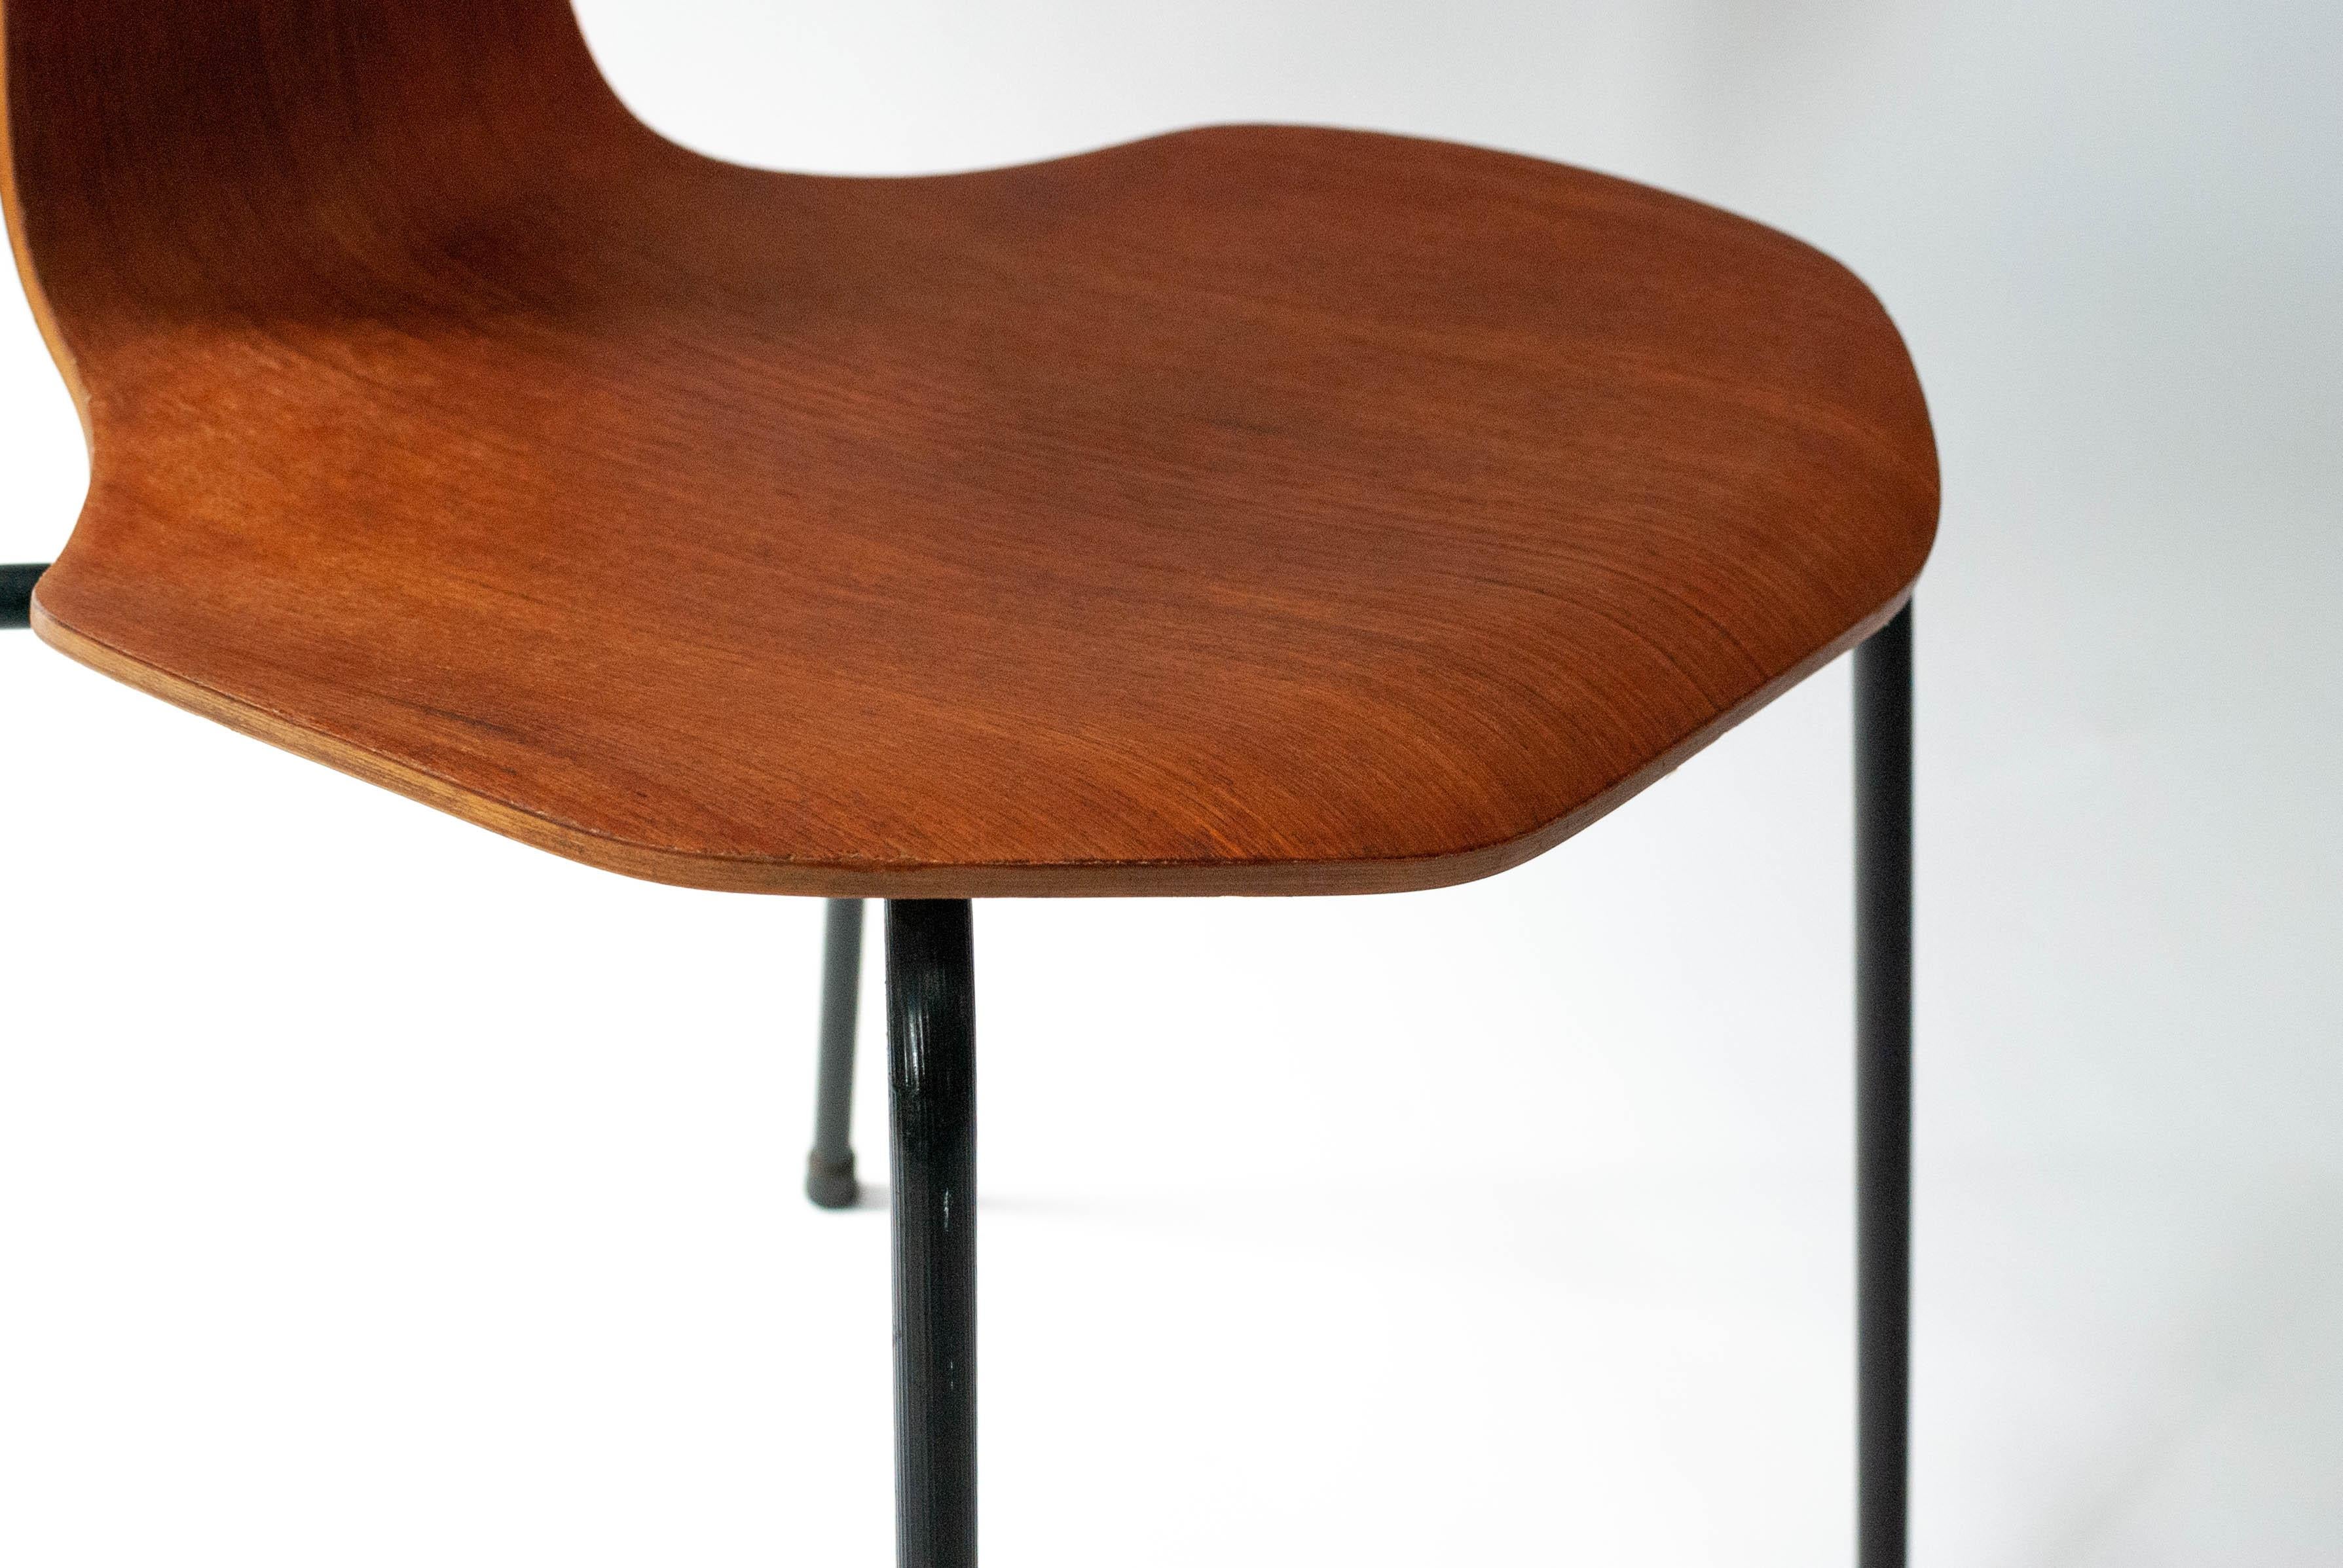 Arne Jacobsen T-chair 3103 for Fritz Hansen 1